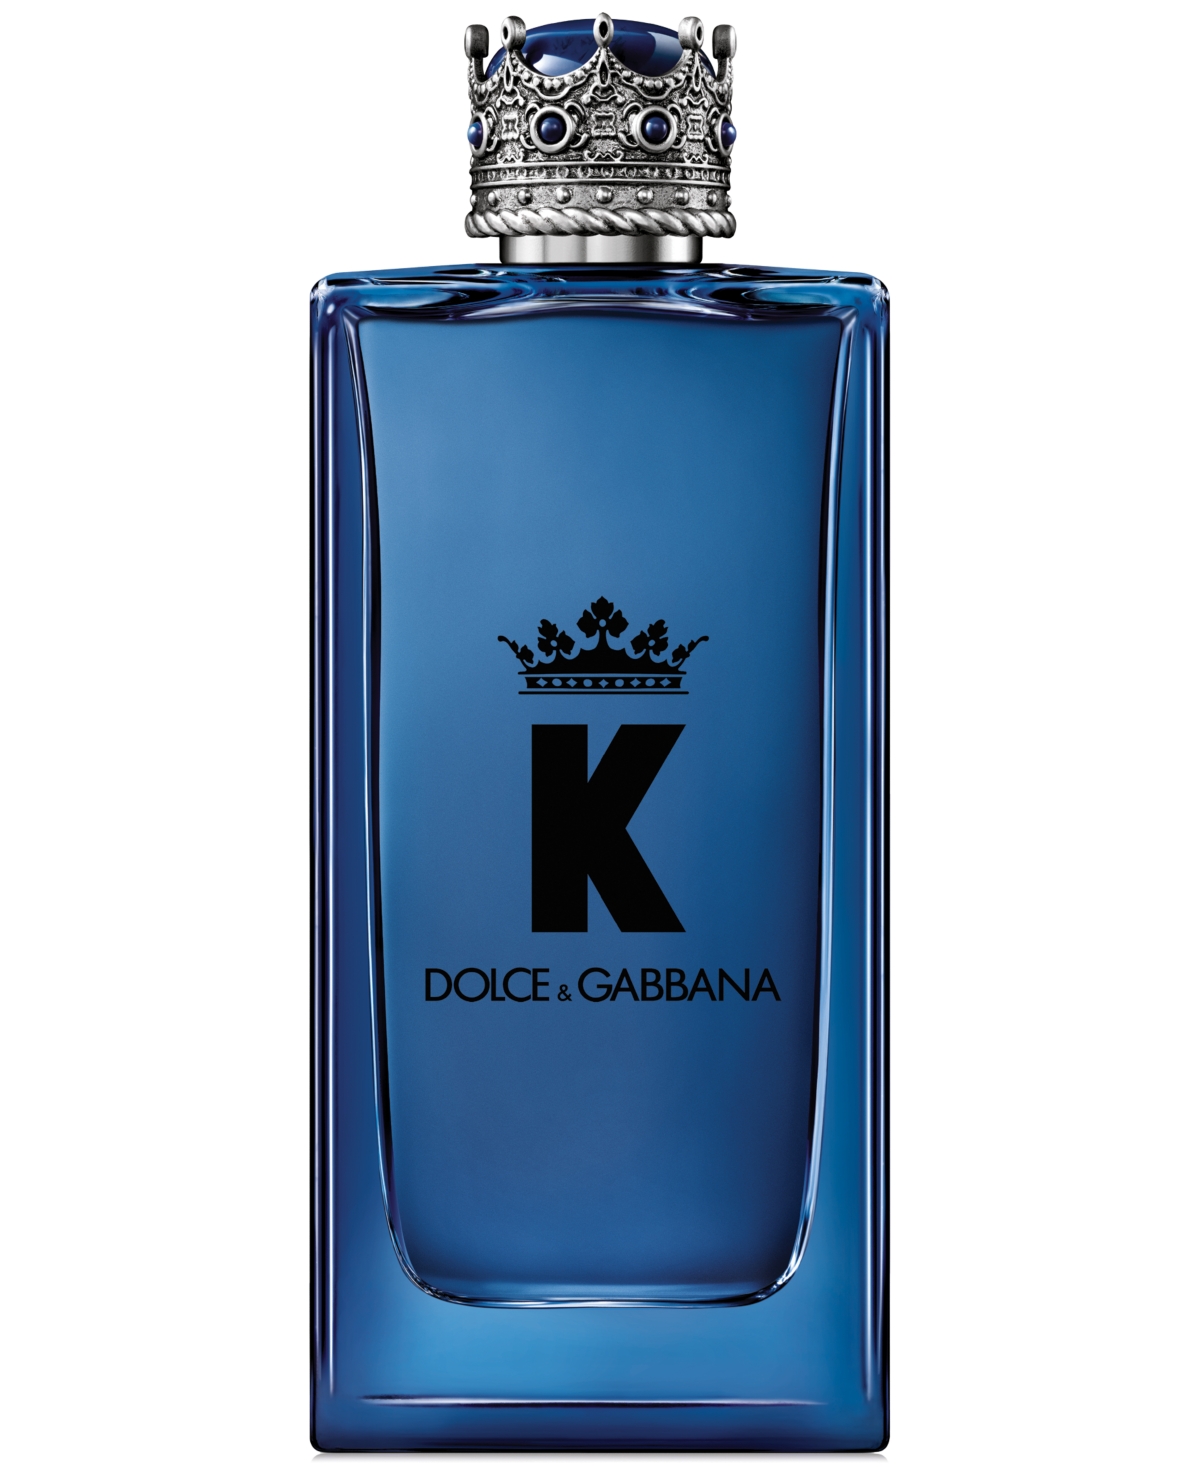 Dolce&Gabbana Men's K Eau de Parfum, 6.7 oz.